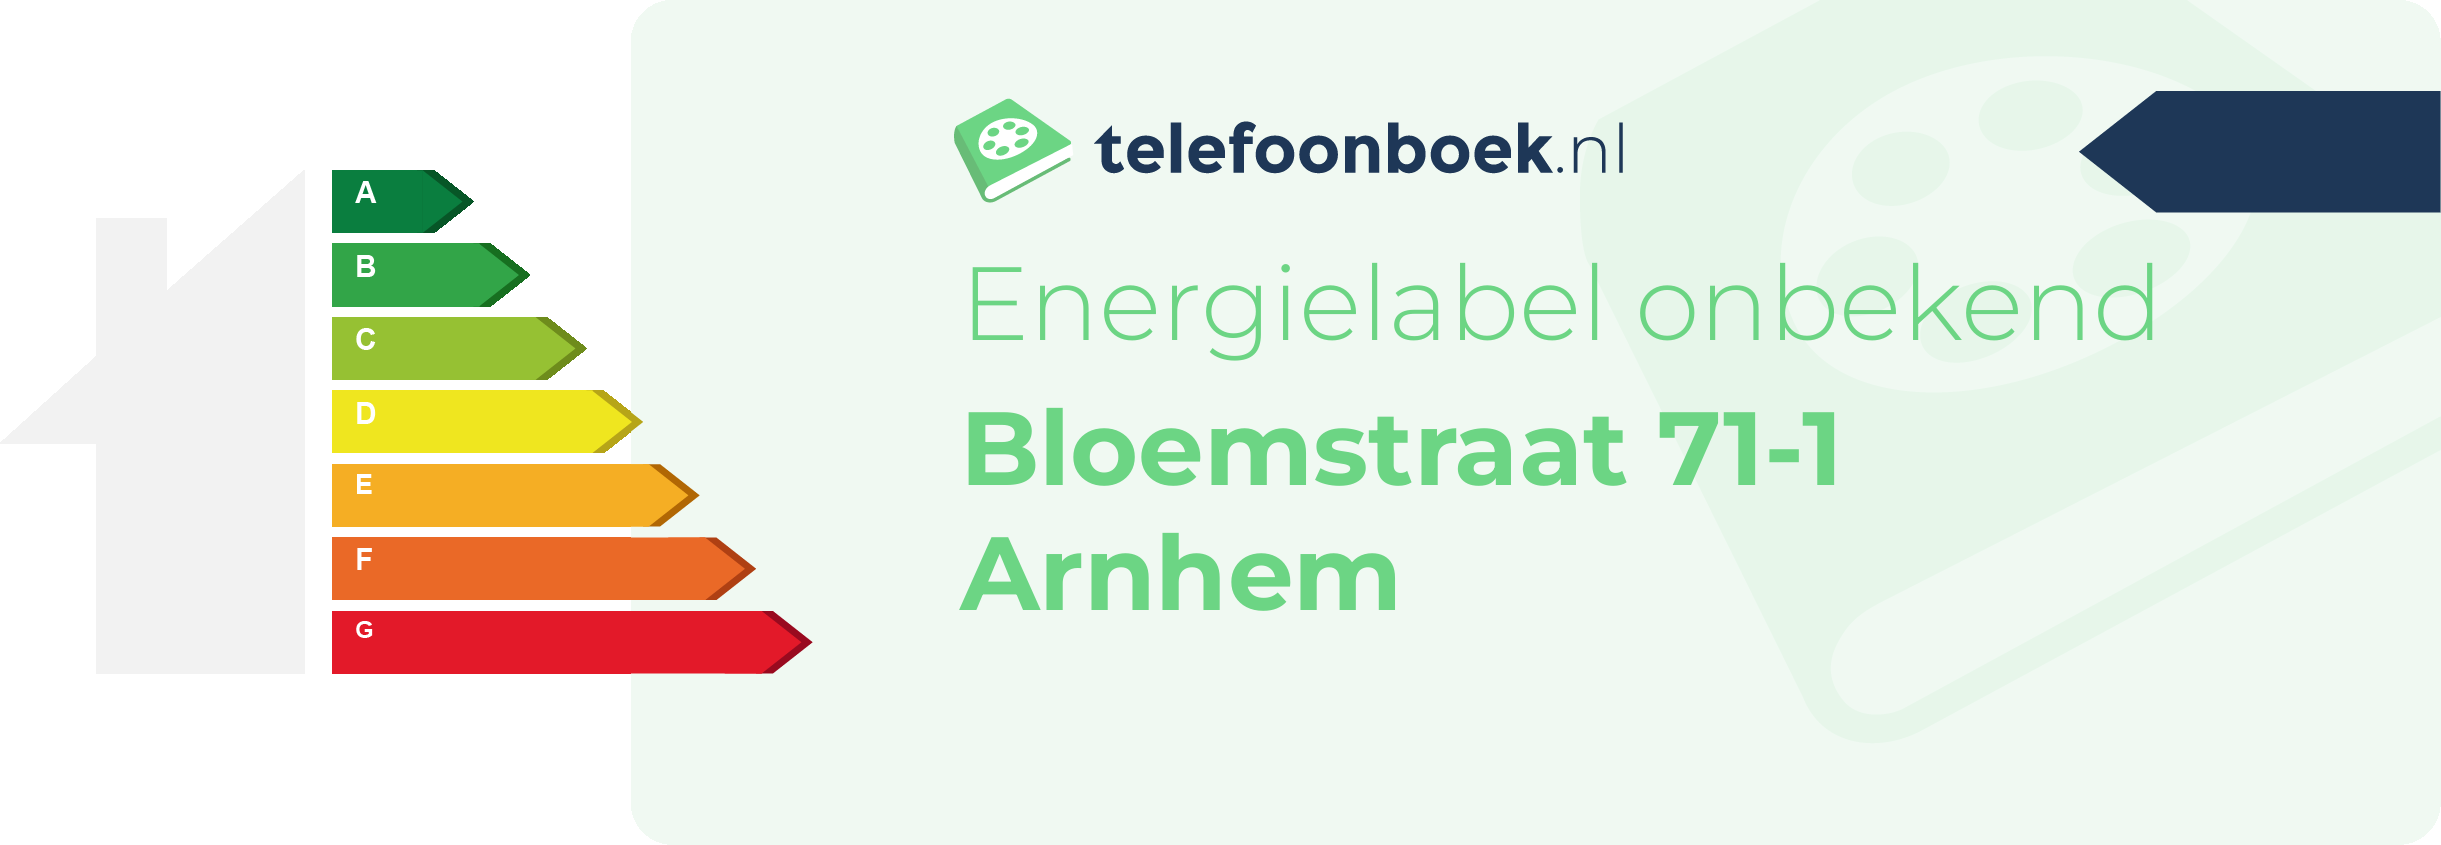 Energielabel Bloemstraat 71-1 Arnhem